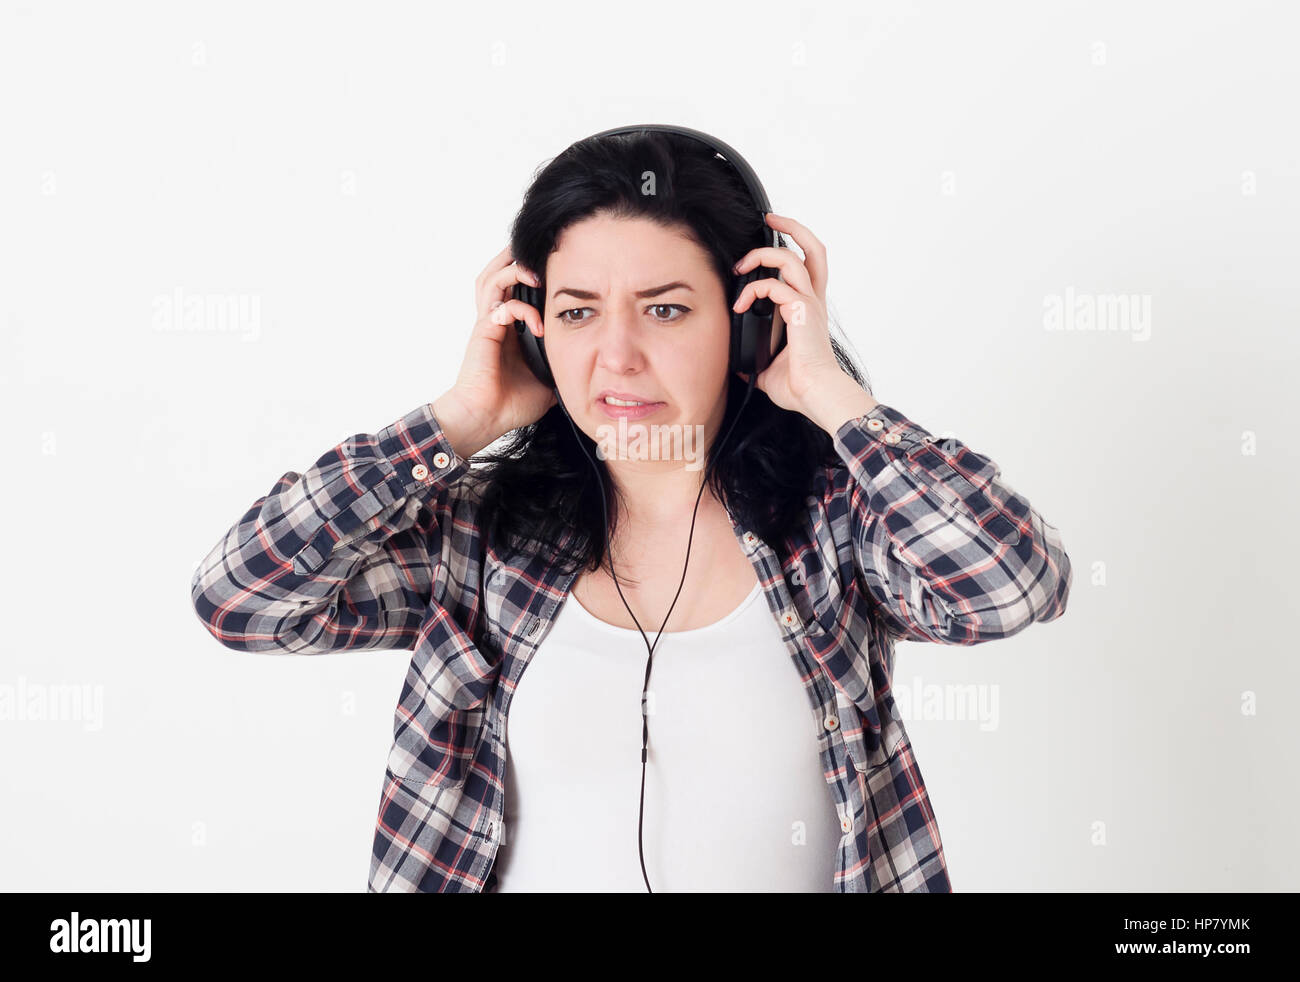 Frau eine sehr schlechte Musik oder unangenehmes Rauschen im Kopfhörer zu hören, sie verdreht Gesicht und will die Kopfhörer vom Kopf zu entfernen. Stockfoto